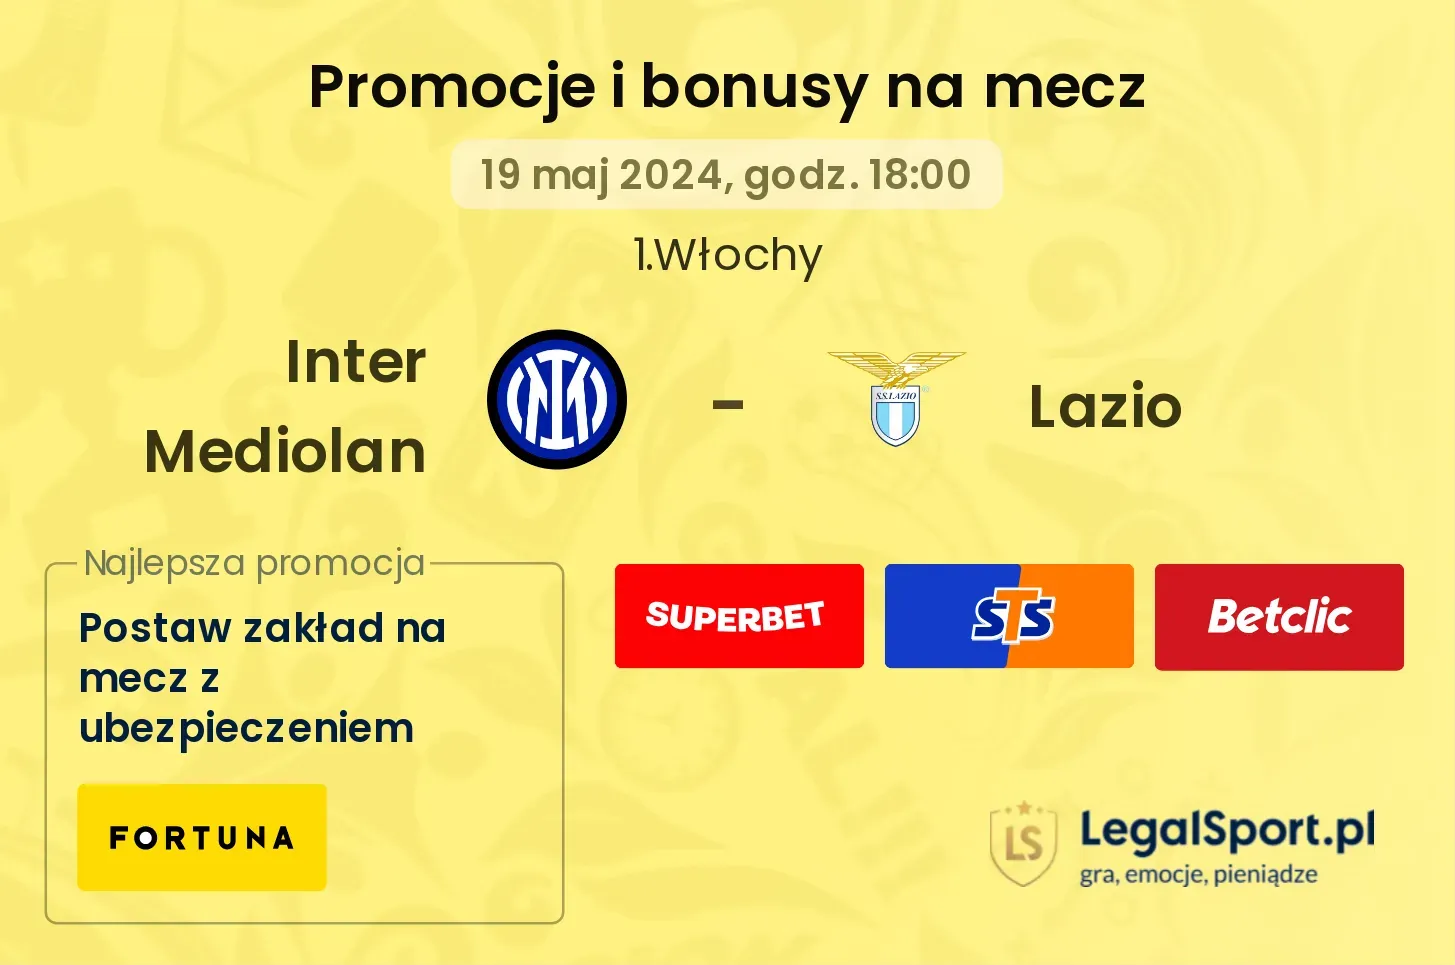 Inter Mediolan - Lazio bonusy i promocje (19.05, 18:00)